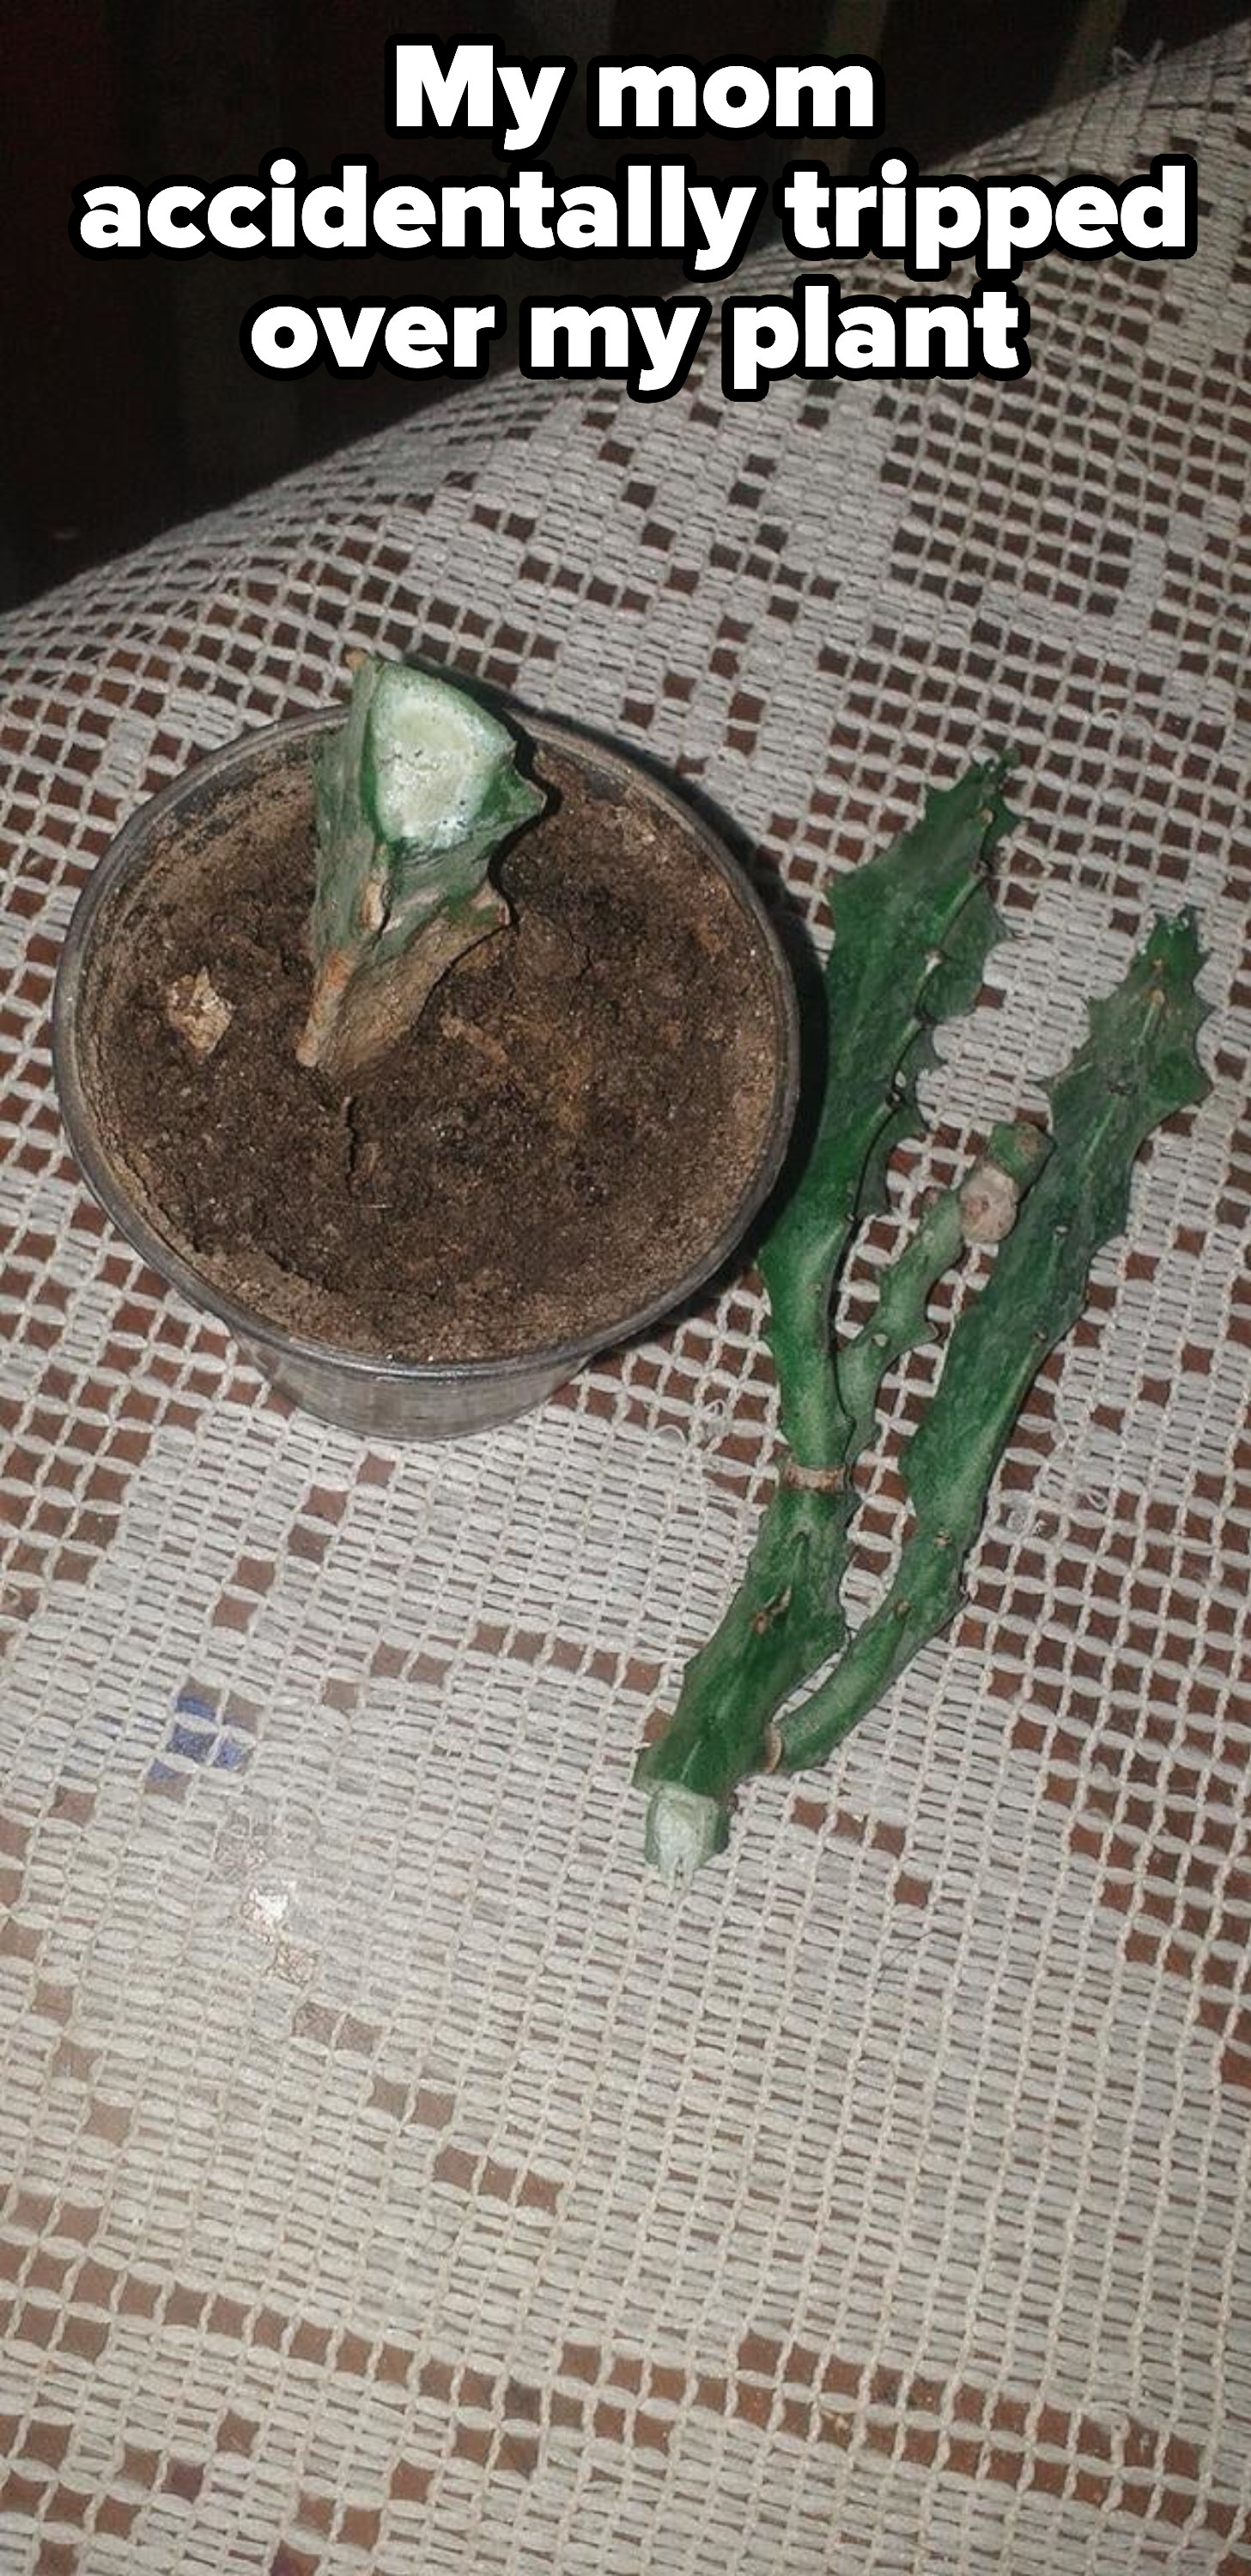 A broken/dead plant